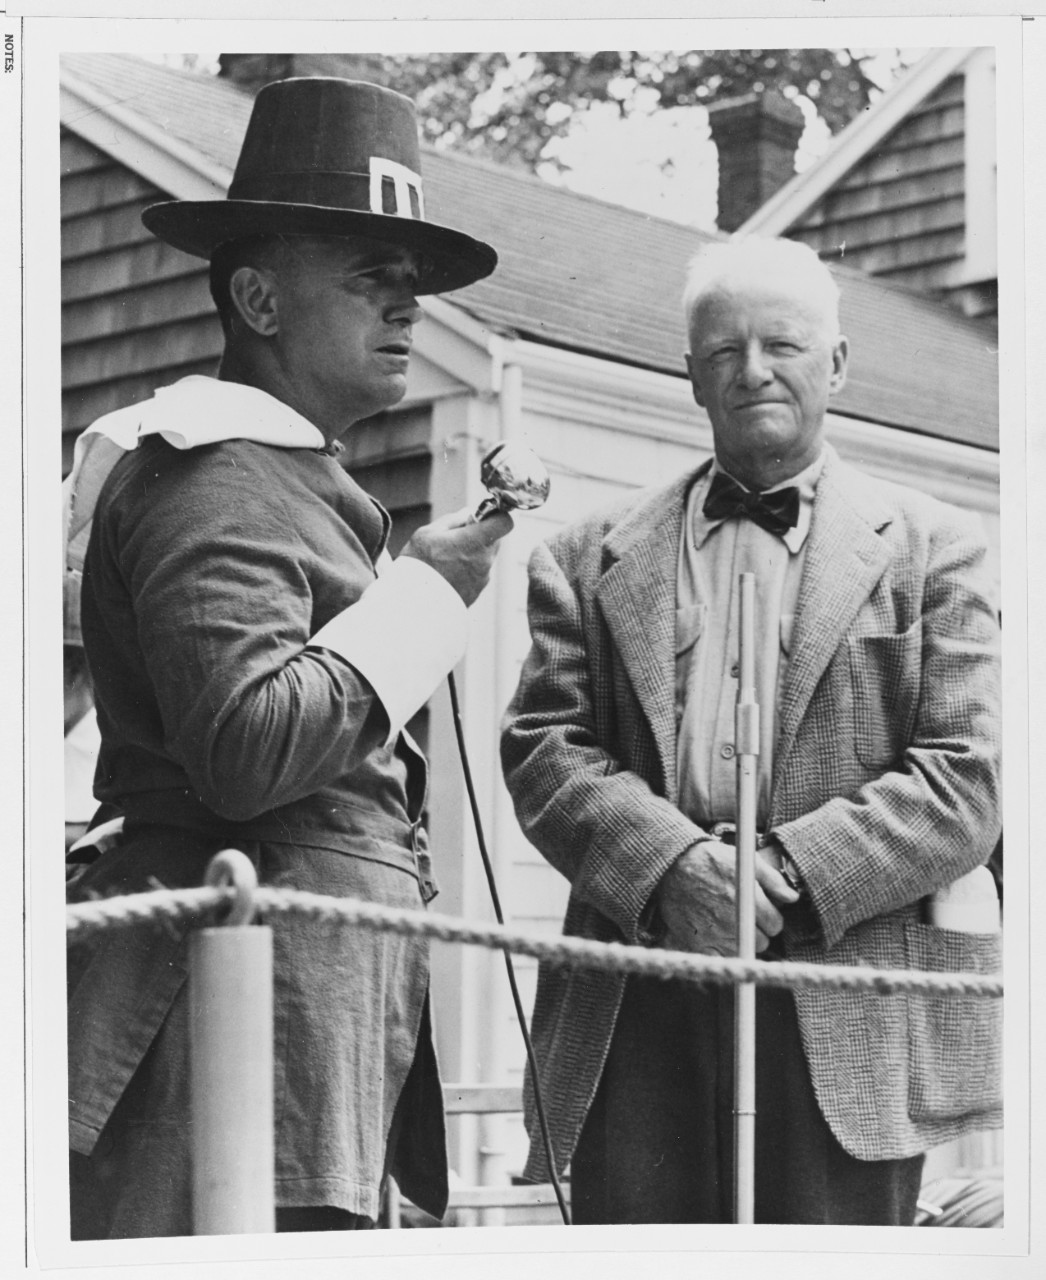 Fleet Admiral Chester W. Nimitz, USN, attends a Puritan celebration at Wellfleet, Cape Cod, Massachusetts